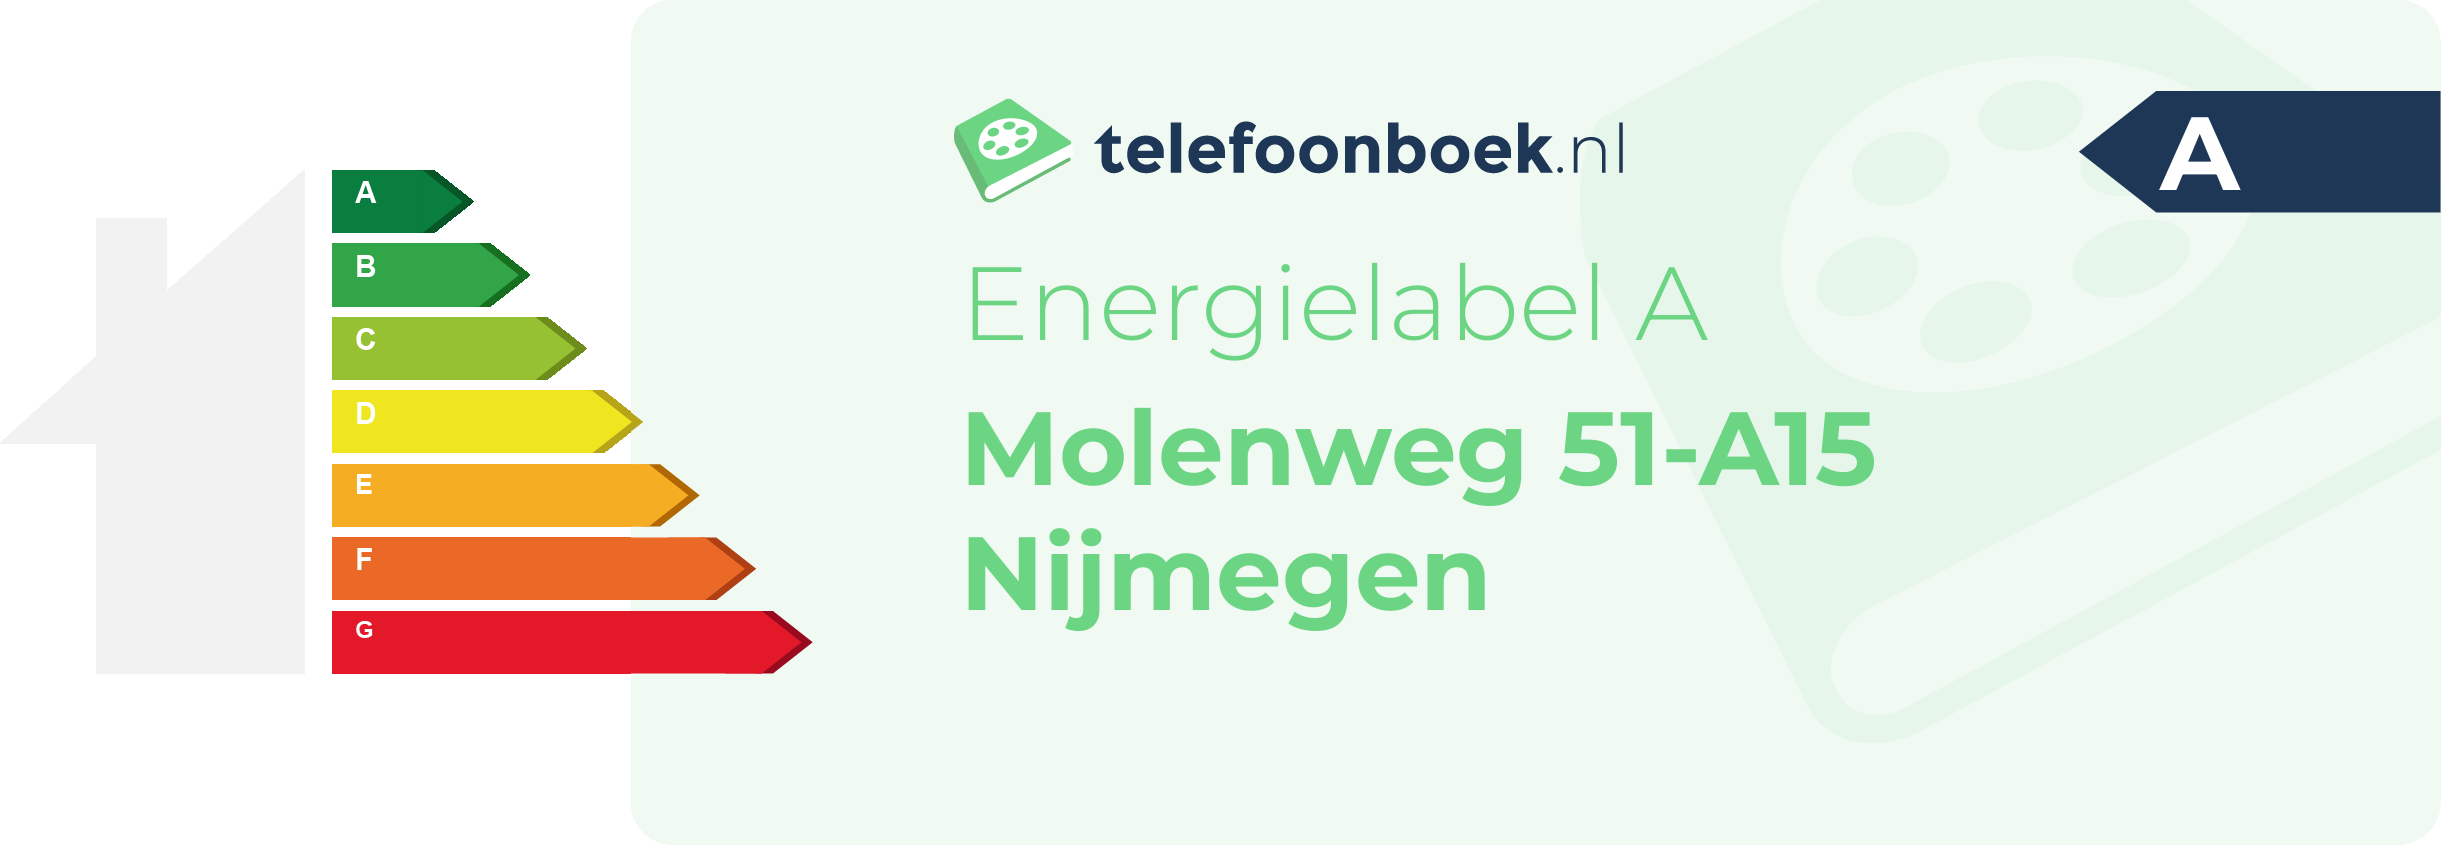 Energielabel Molenweg 51-A15 Nijmegen